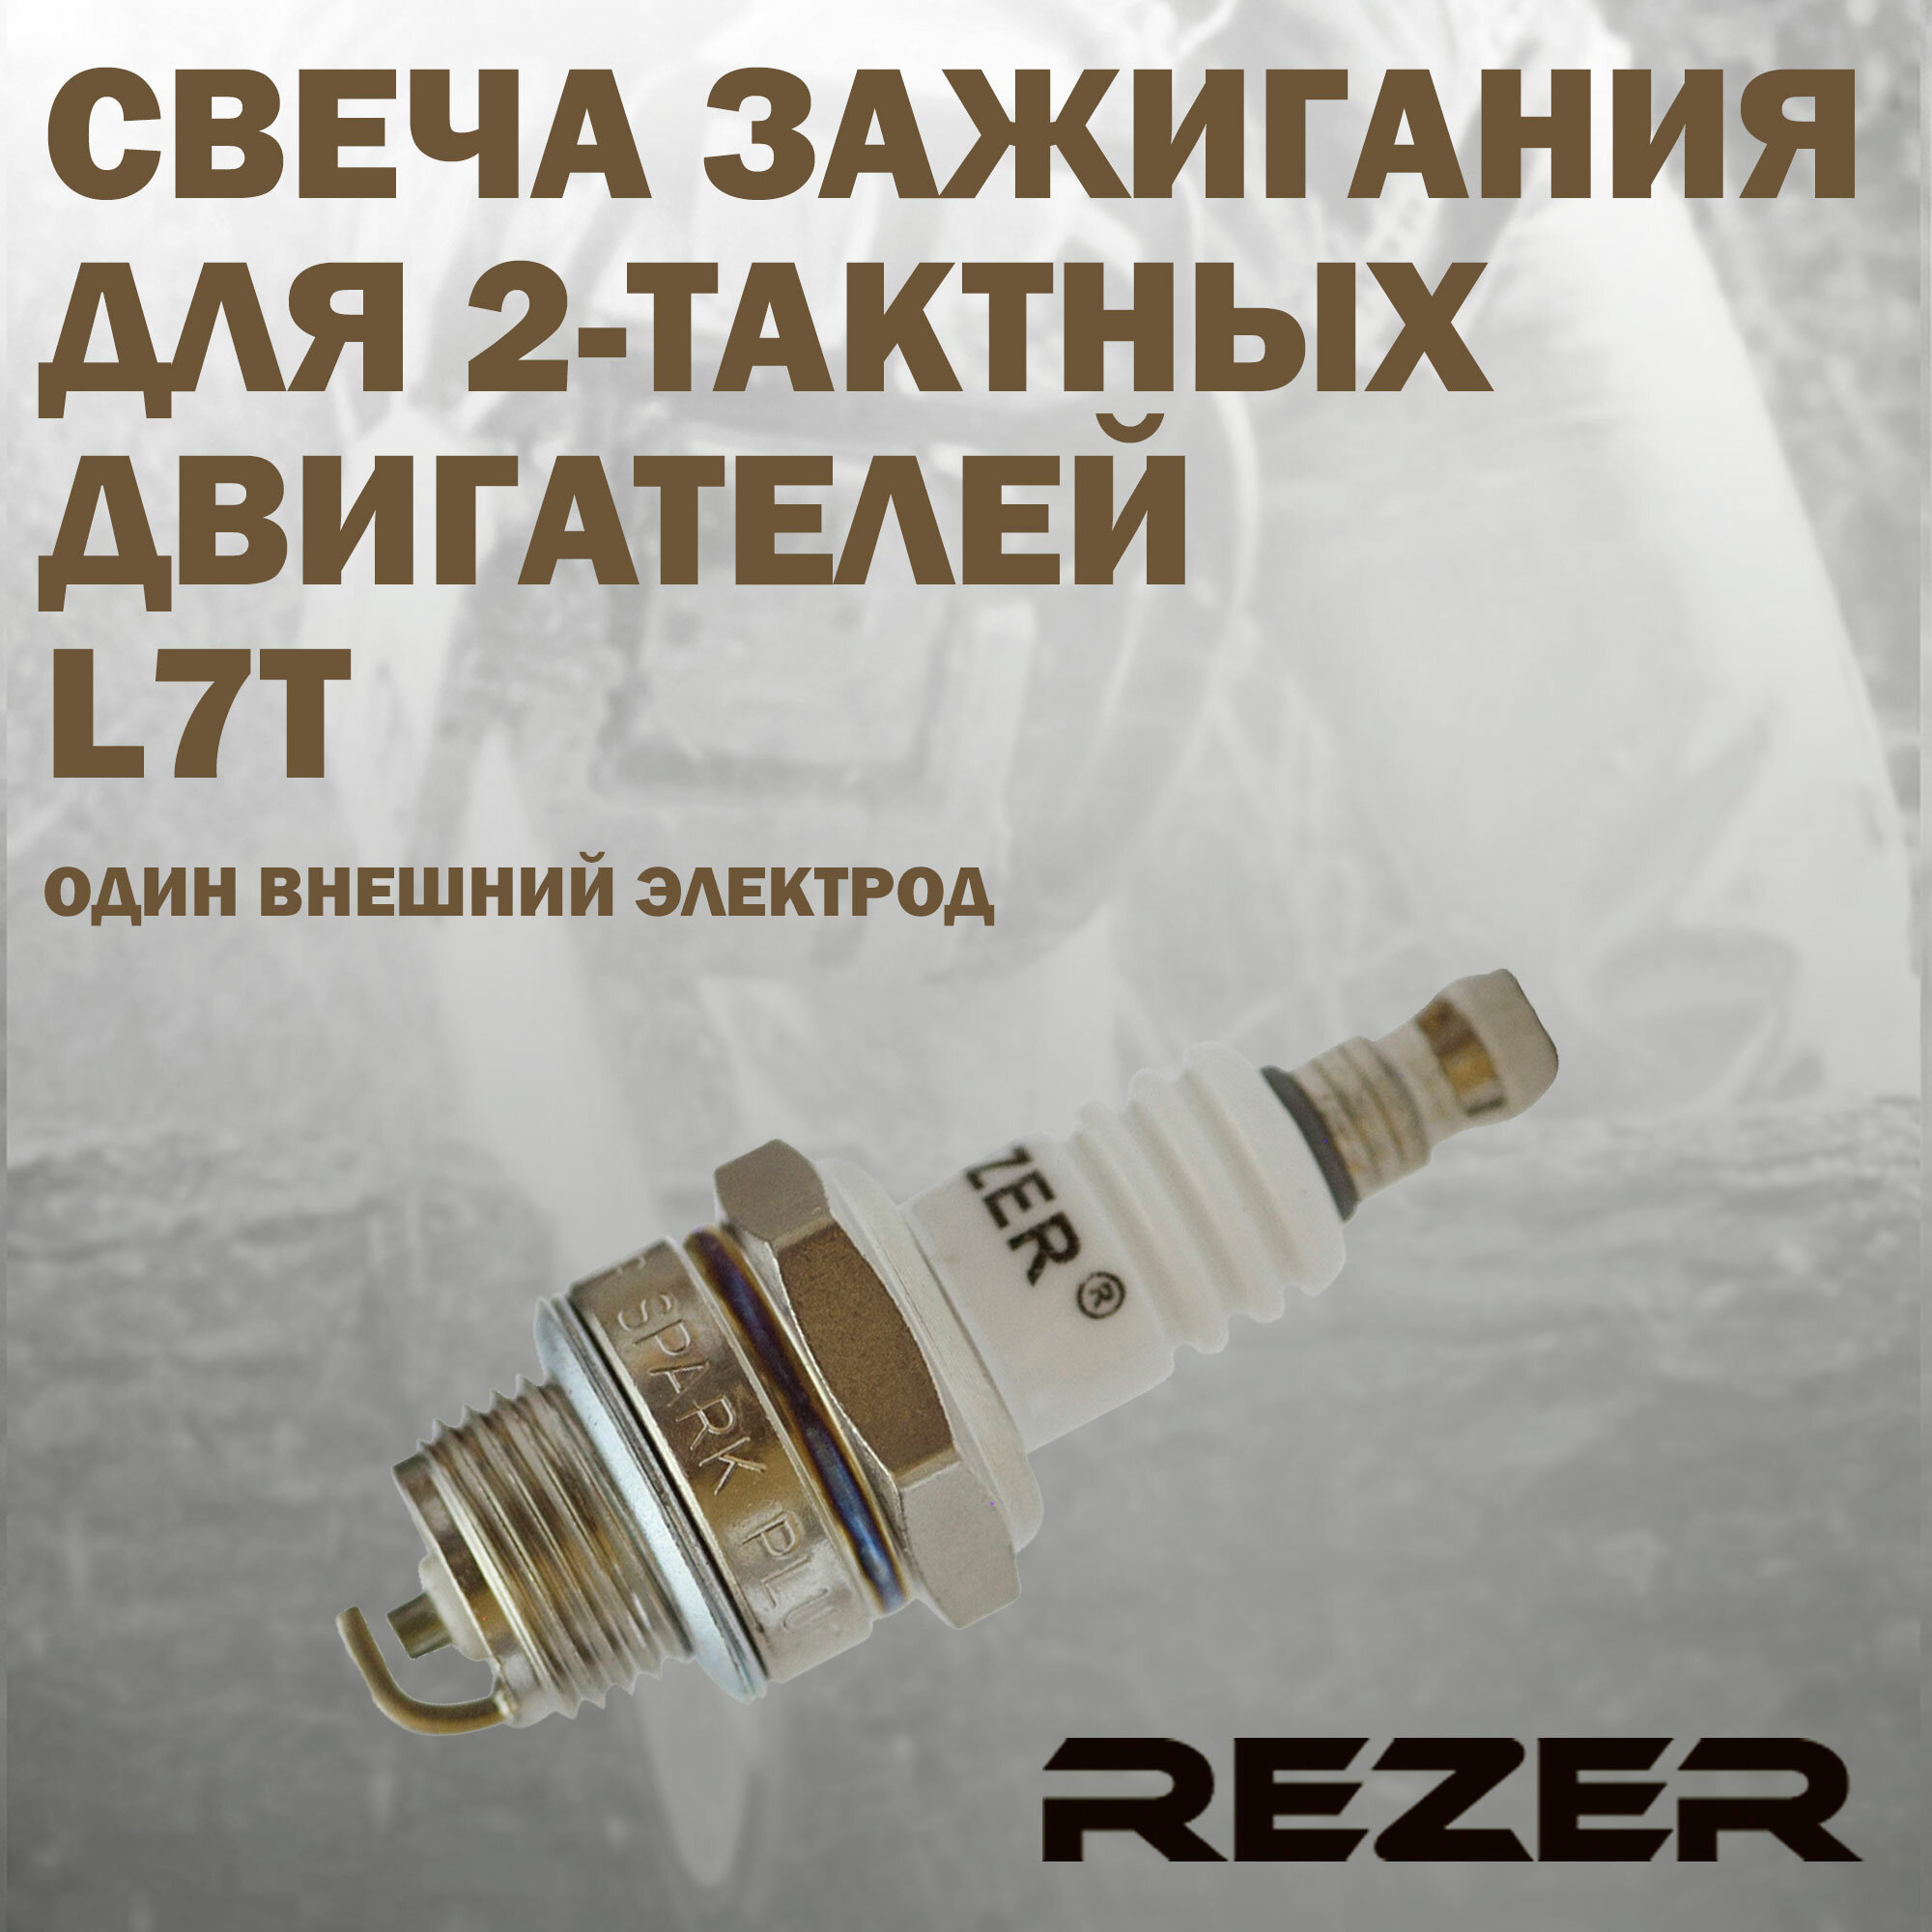 Свеча зажигания Rezer L7T для 2-тактных двигателей Stihl Husqvarna Partner Champion Carver и другие